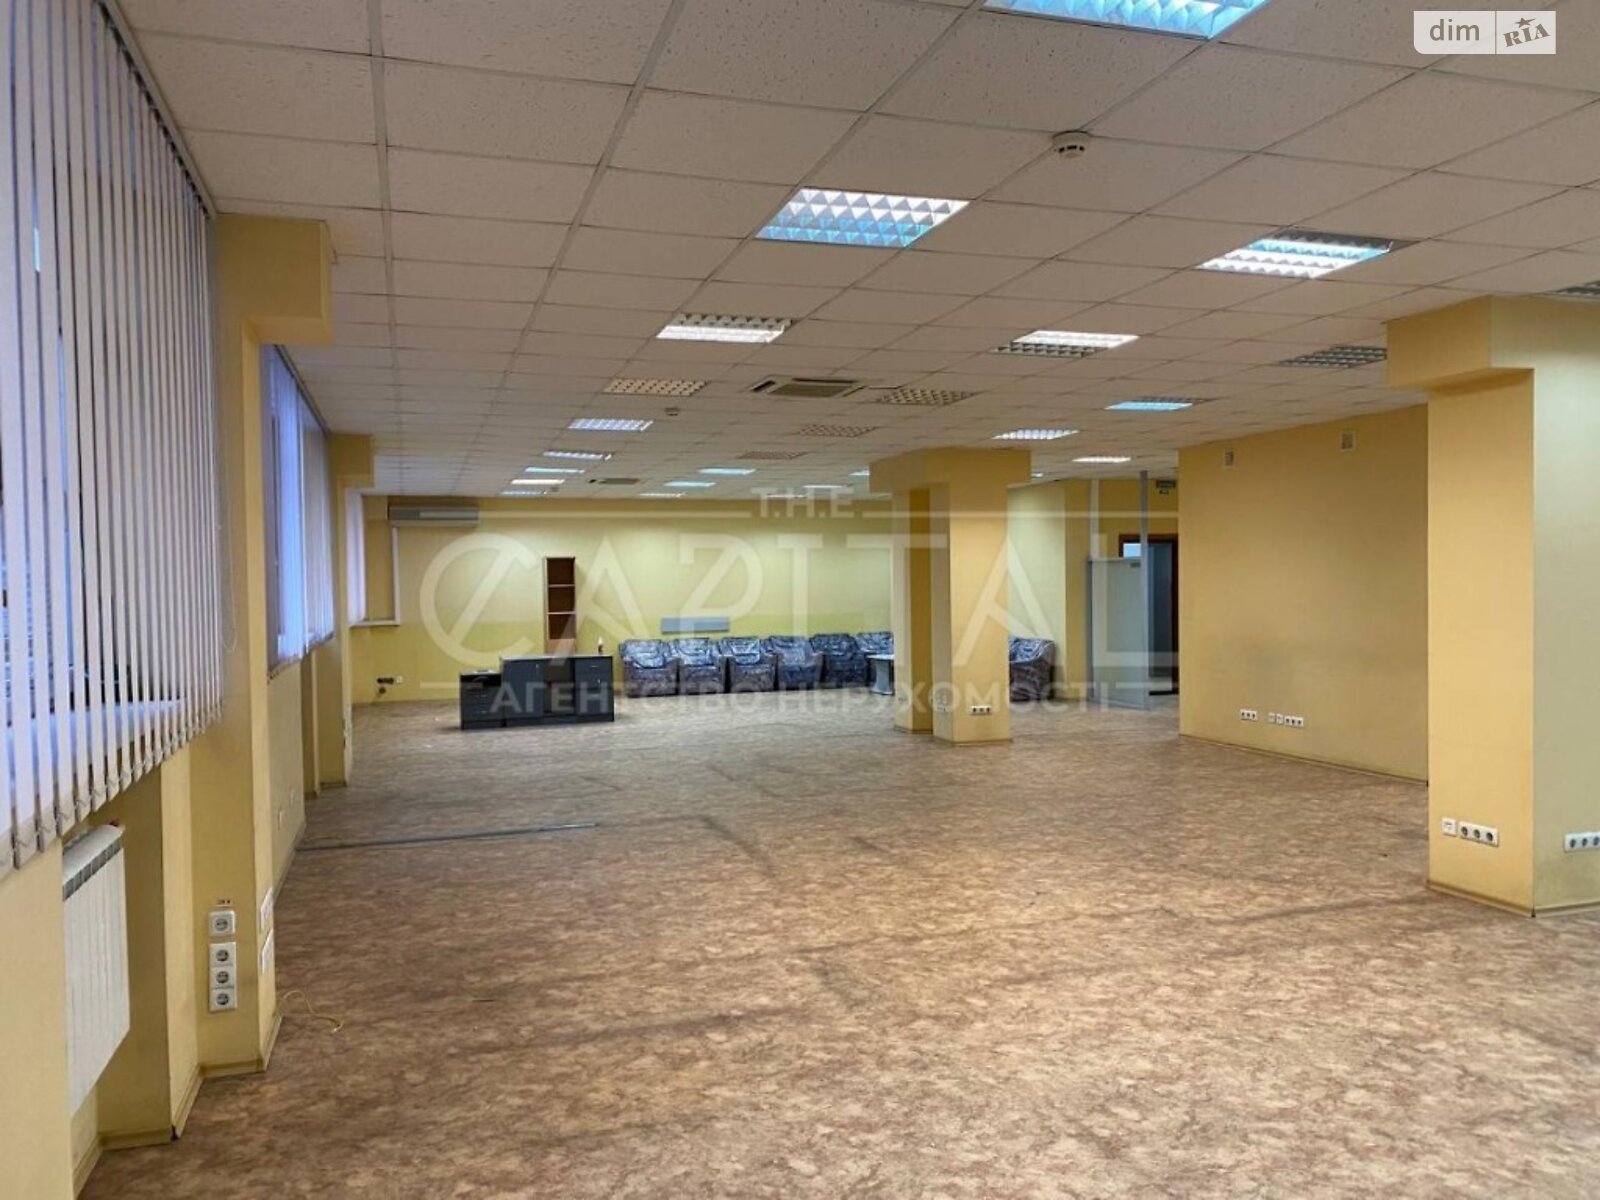 Аренда офисного помещения в Киеве, Академика Палладина проспект 44А, помещений - 3, этаж - 4 фото 1